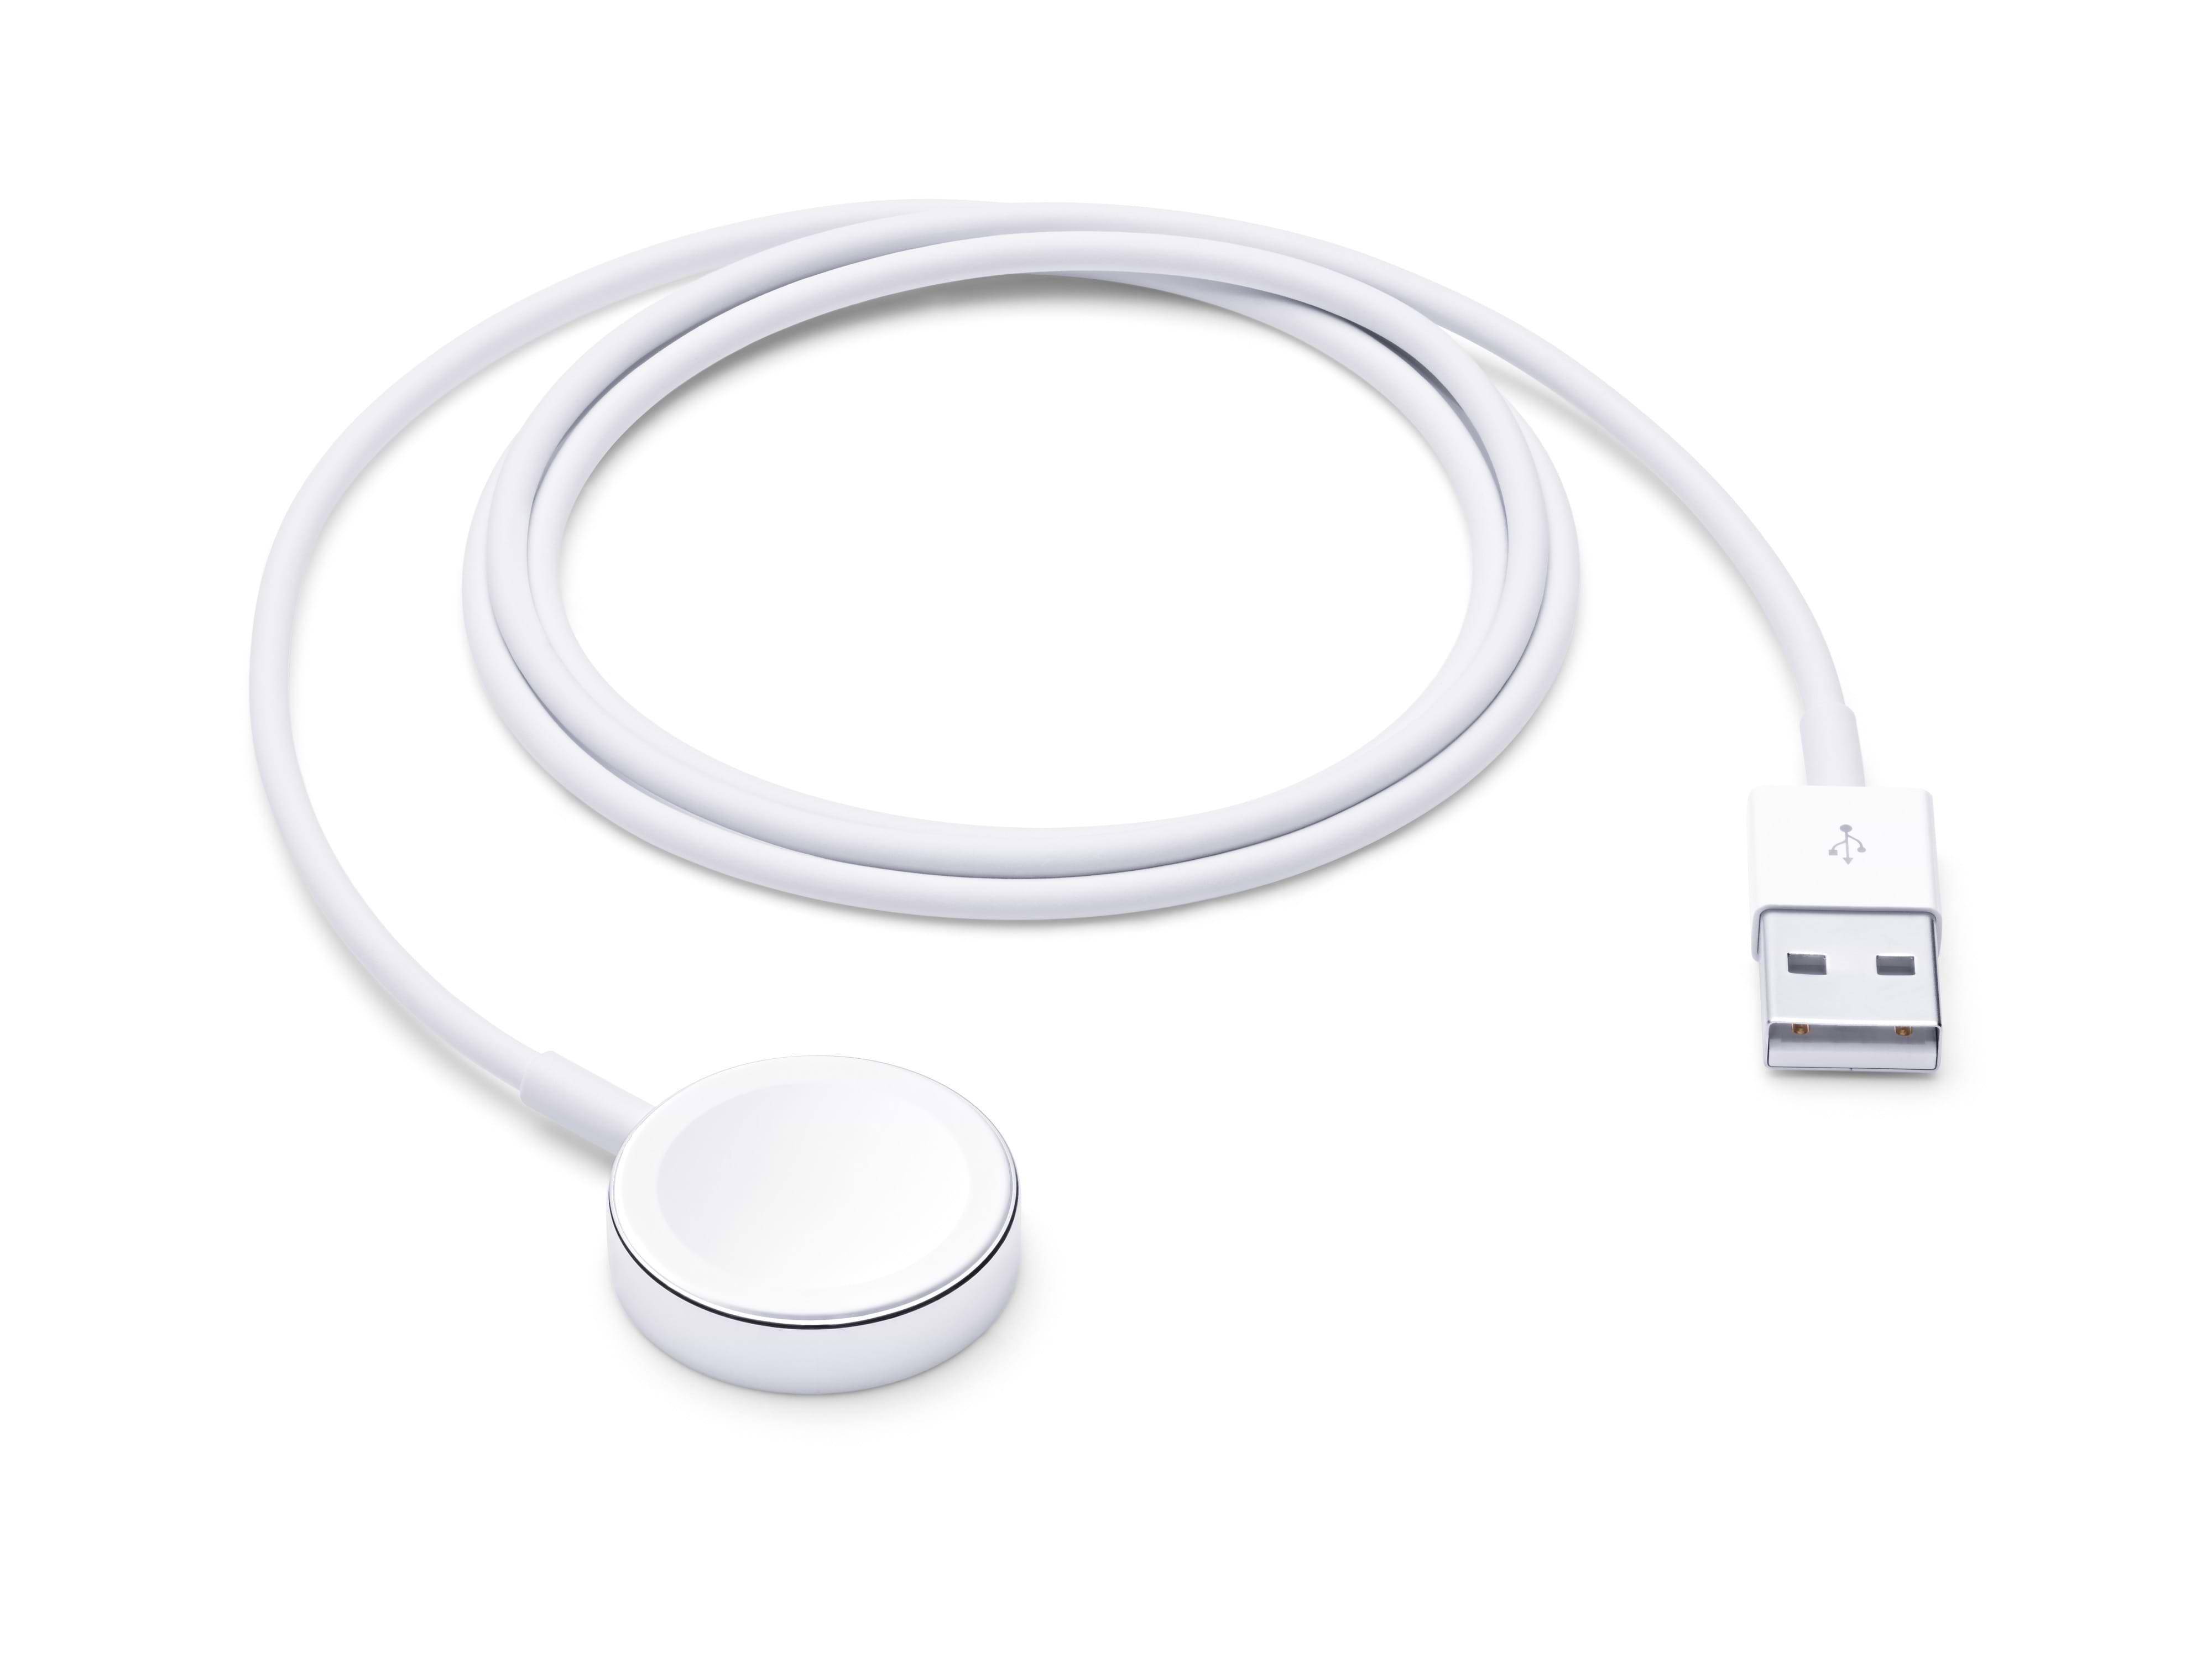  מטען אלחוטי לשעון  Apple Watch Magnetic Charging Cable באורך 1 מטר - צבע לבן שנה אחריות ע